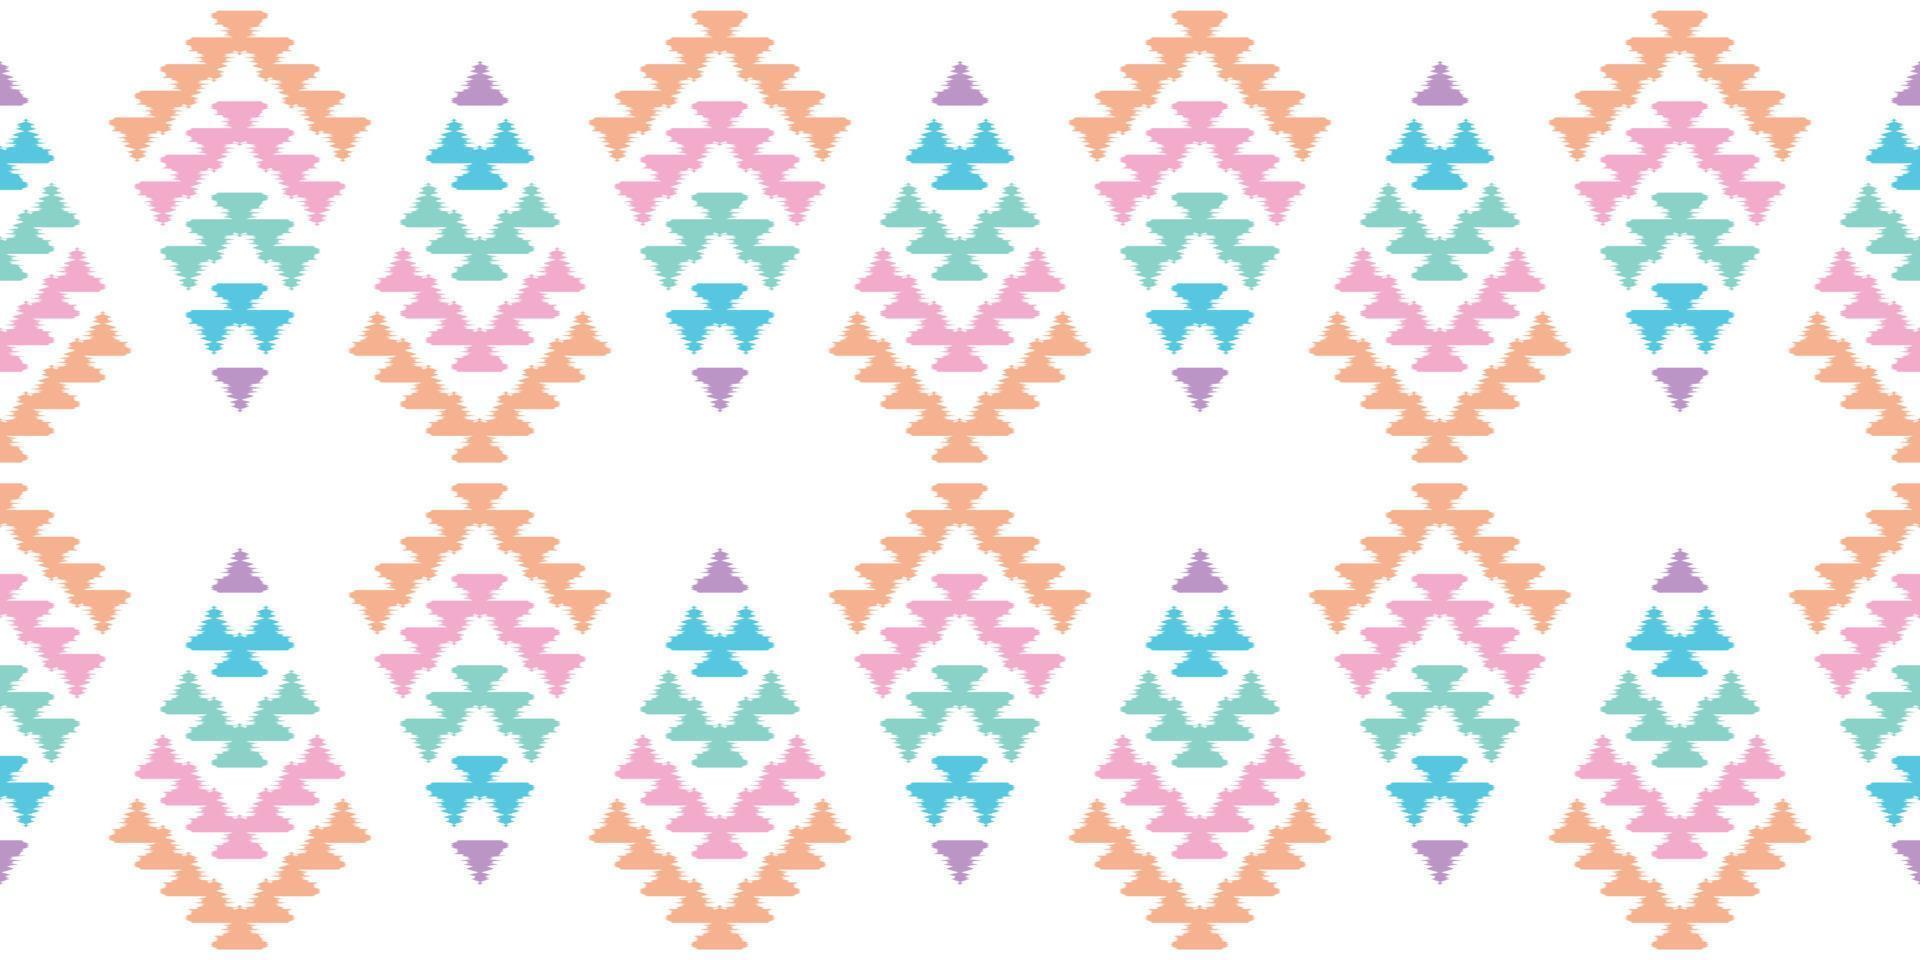 ikat handgemaakte randen prachtige pastelkunst. Navajo chevron naadloze patroon in tribal, folk borduurwerk, Mexicaanse Azteekse geometrische kunst ornament print.design voor tapijt, inwikkeling, stof, dekking, textiel vector